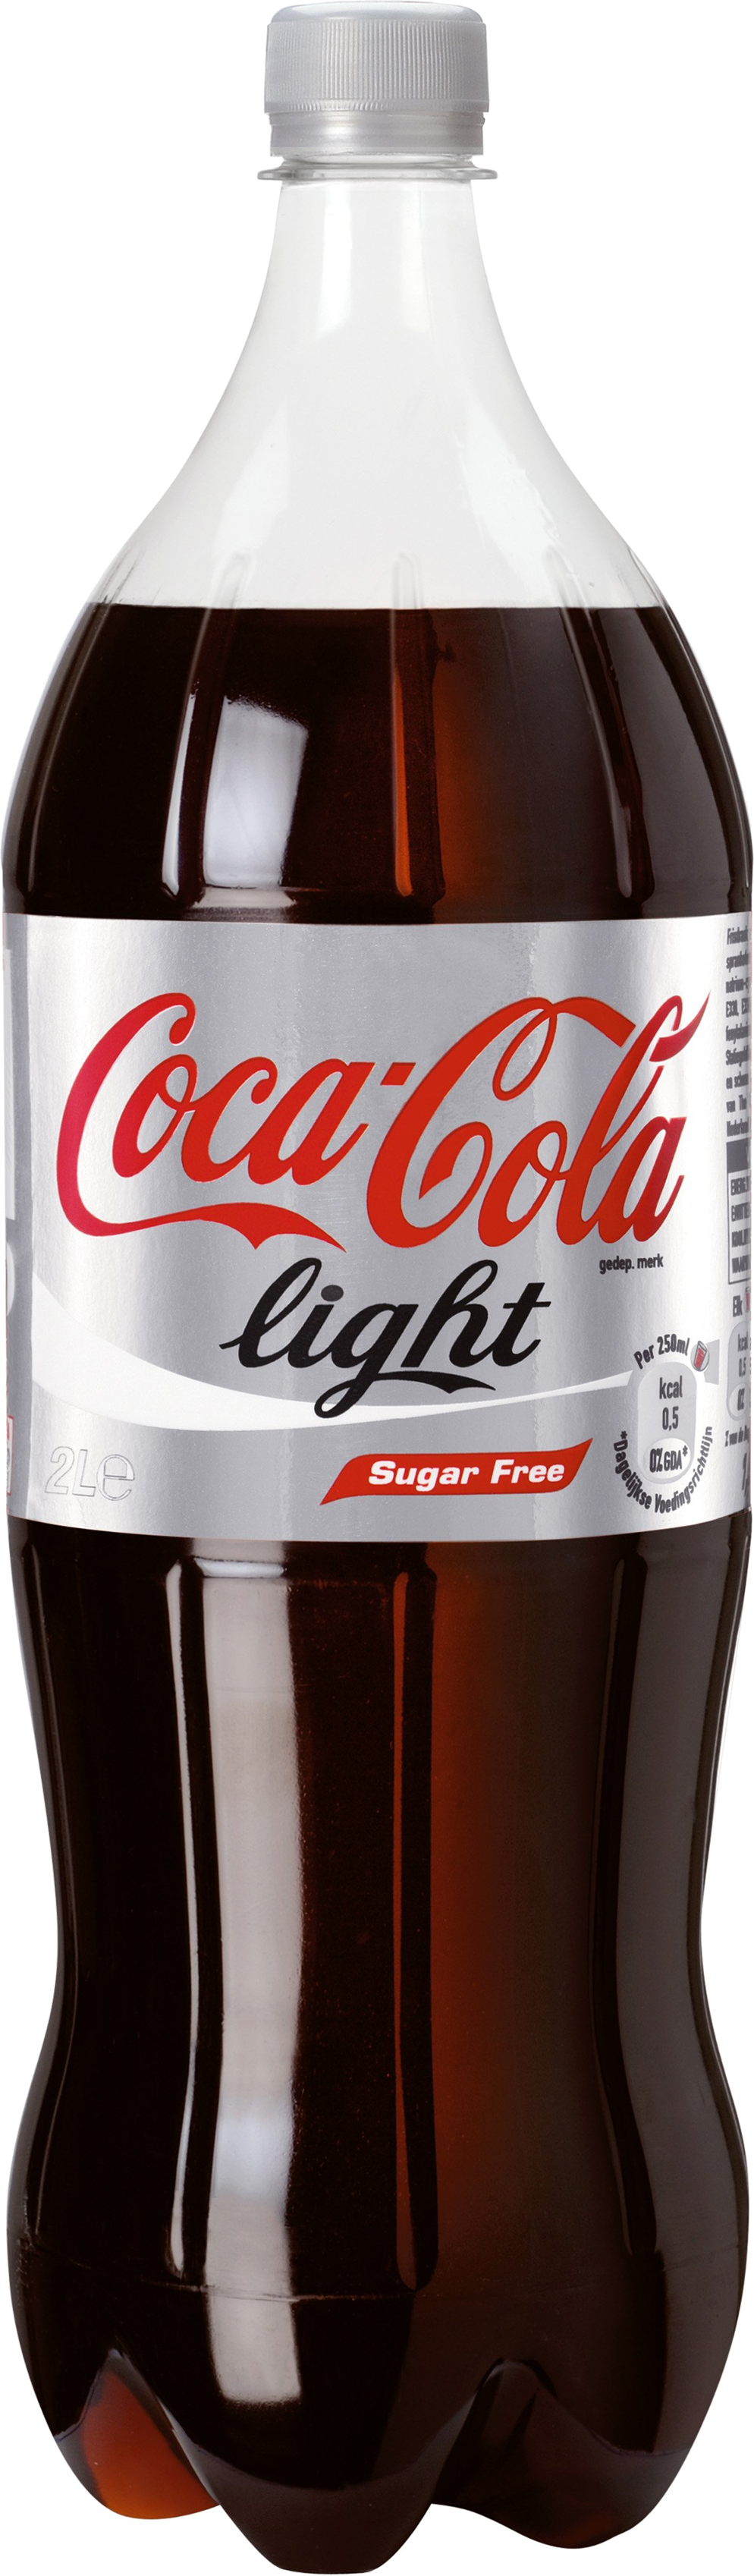 Cola Bottle PNG - 136721